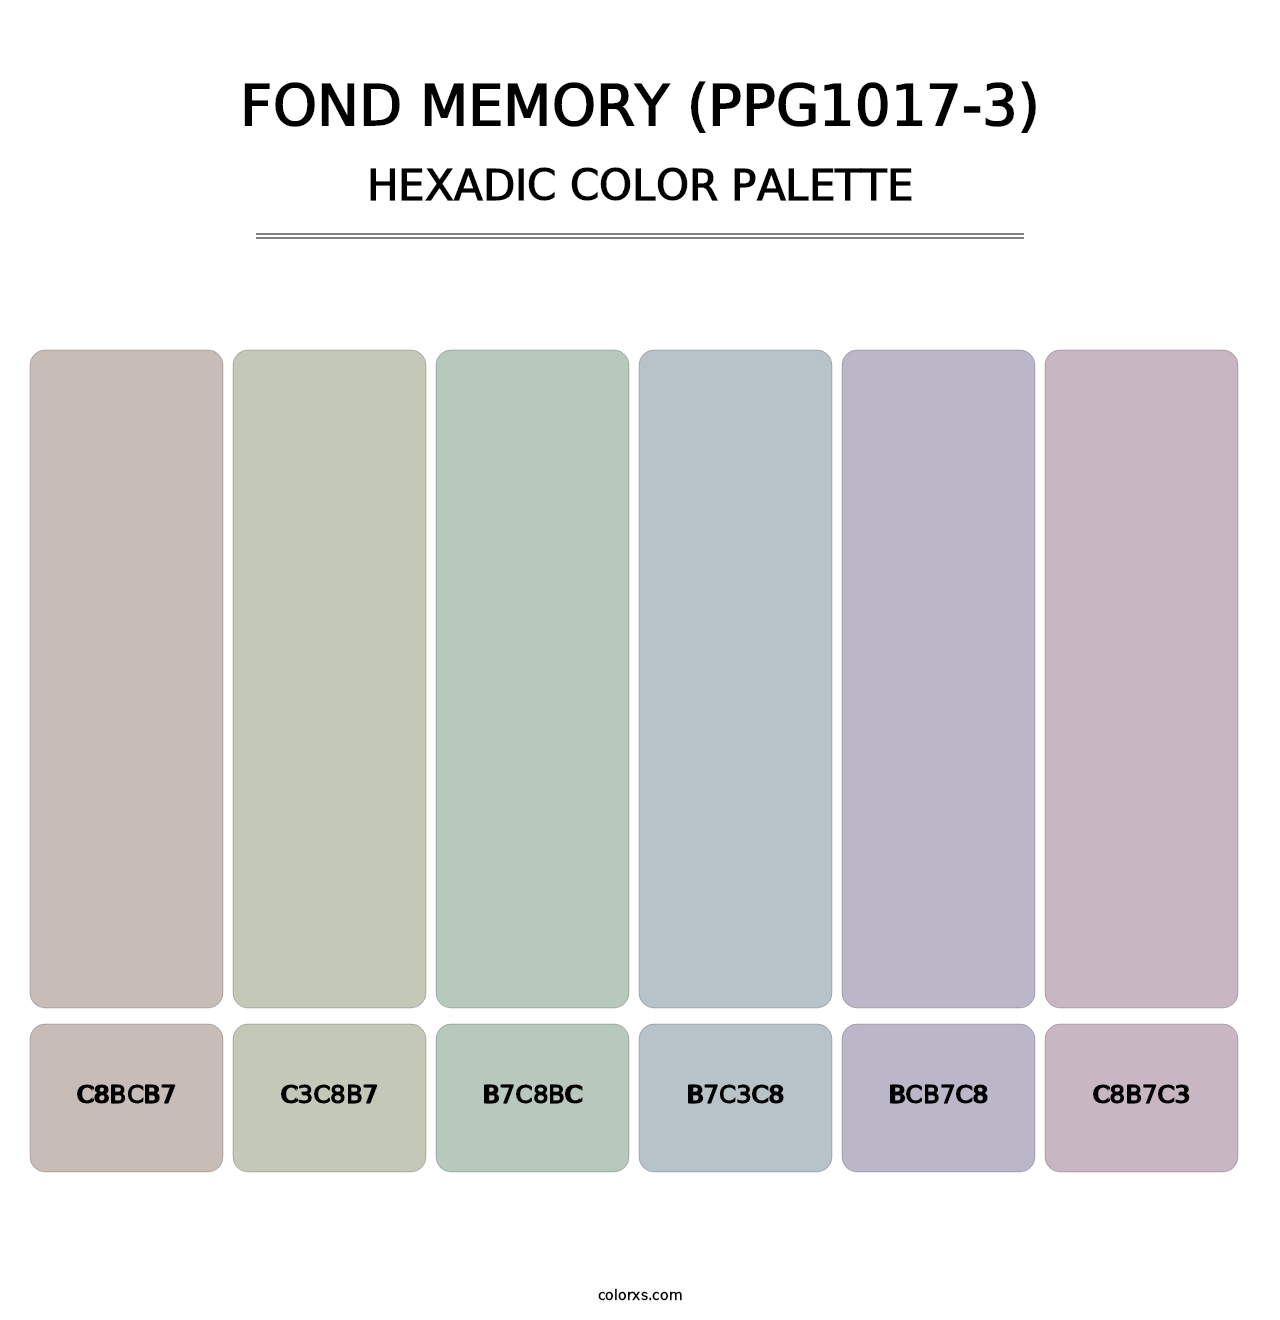 Fond Memory (PPG1017-3) - Hexadic Color Palette